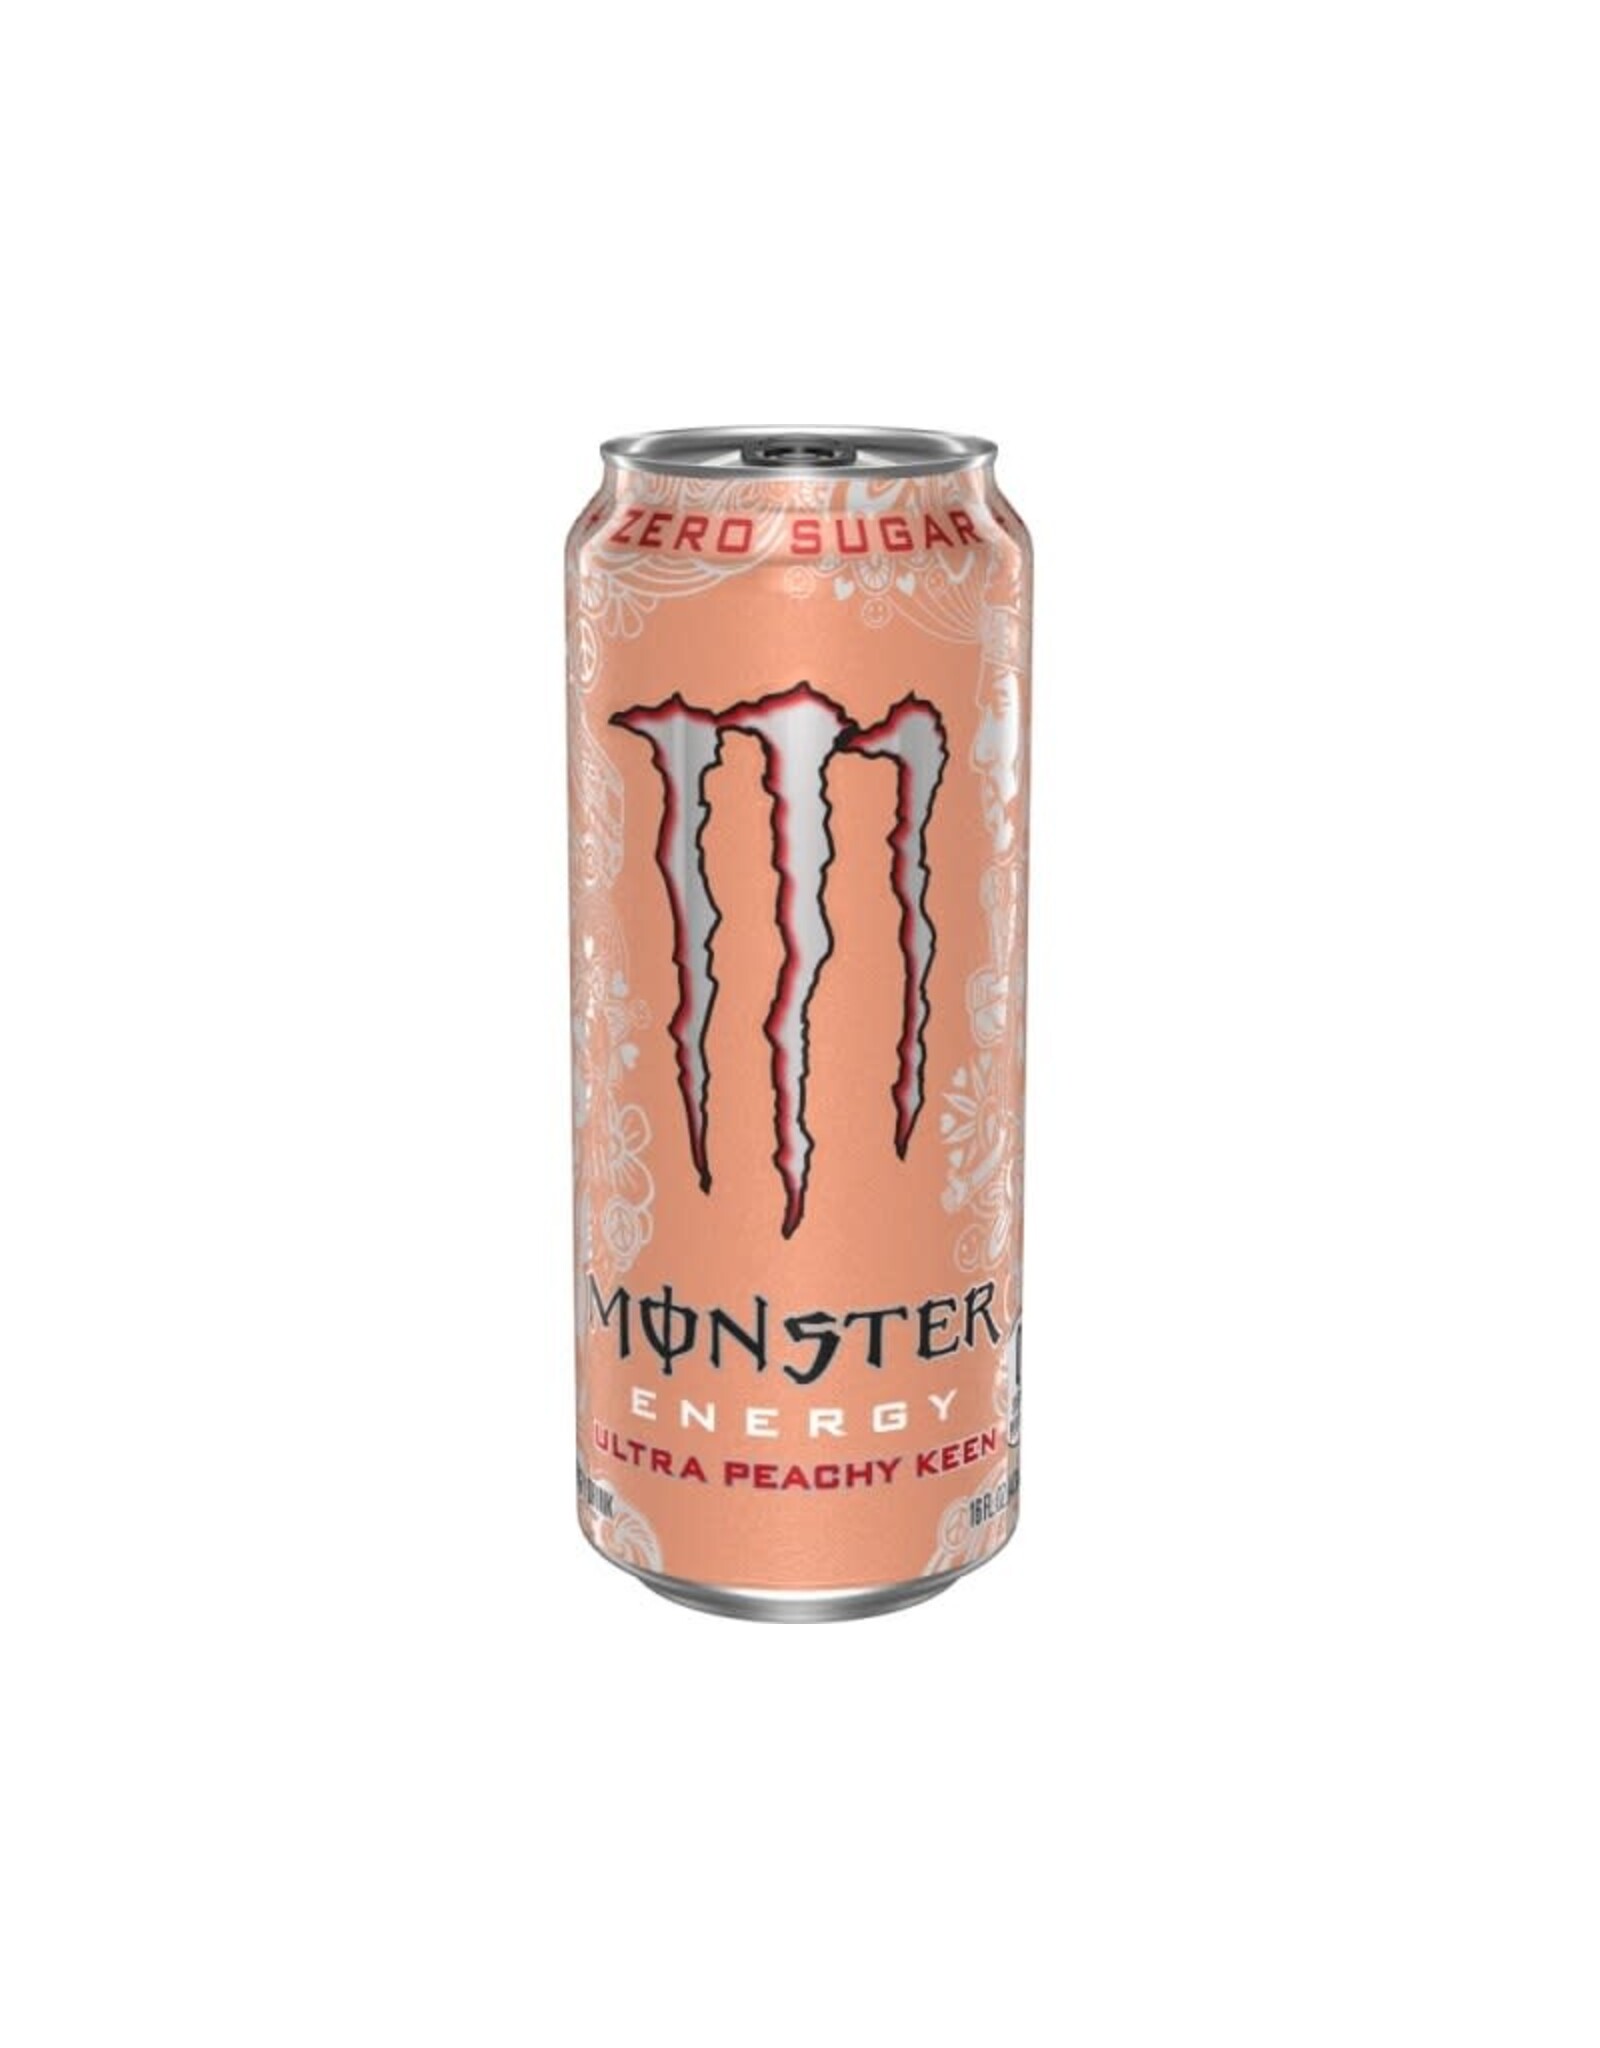 Monster Energy Ultra Peachy Keen (EU) - 500ml